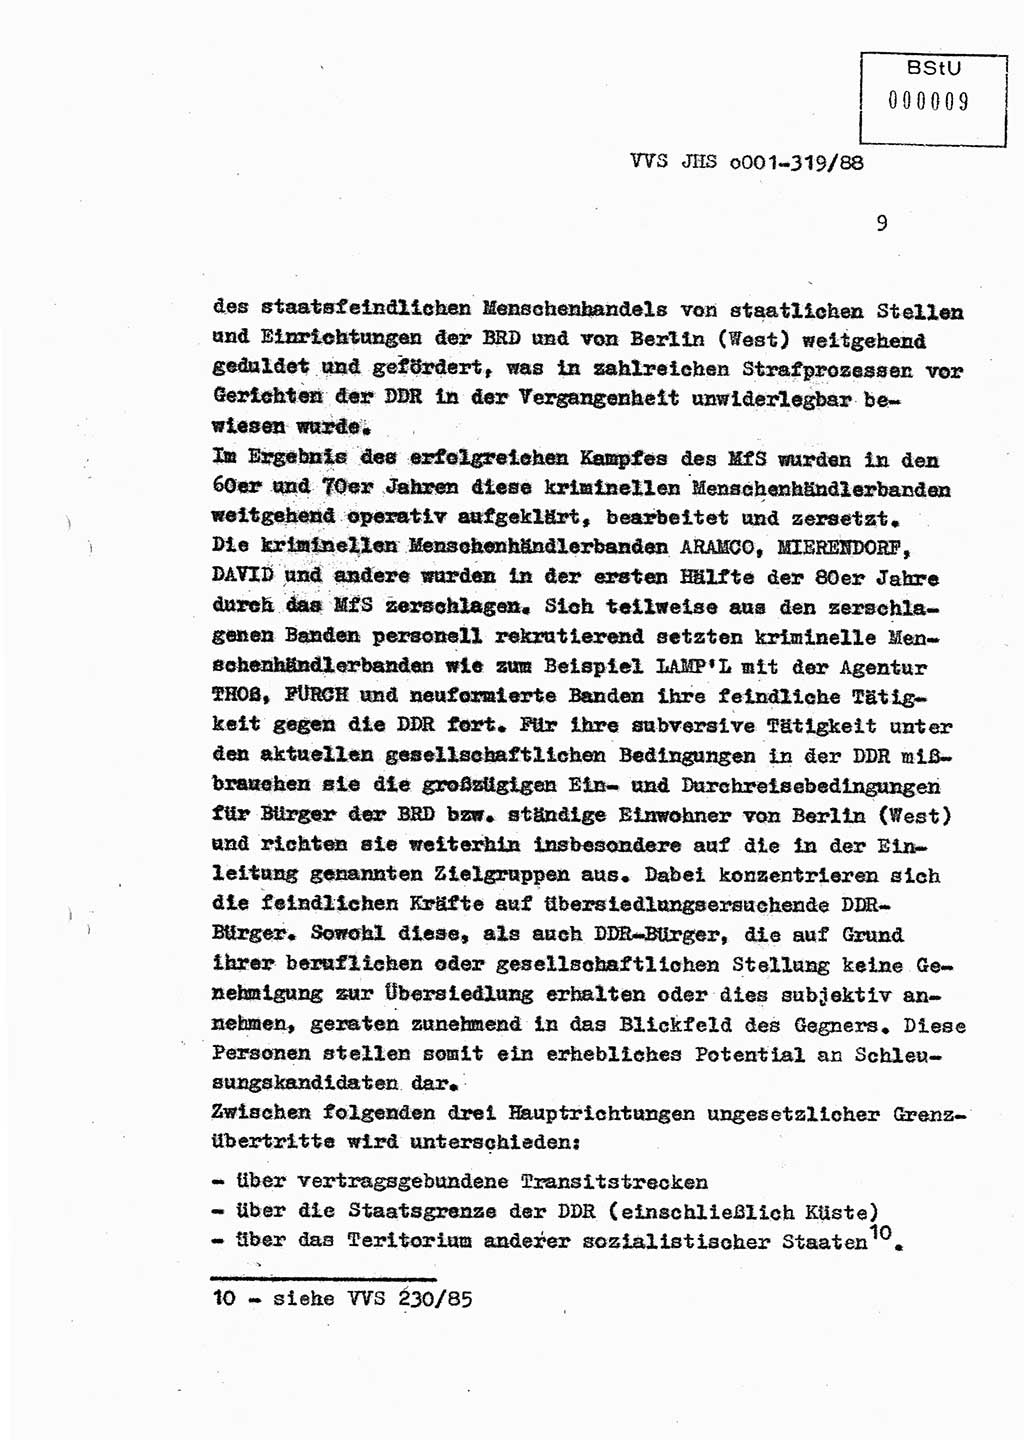 Diplomarbeit Offiziersschüler Holger Zirnstein (HA Ⅸ/9), Ministerium für Staatssicherheit (MfS) [Deutsche Demokratische Republik (DDR)], Juristische Hochschule (JHS), Vertrauliche Verschlußsache (VVS) o001-319/88, Potsdam 1988, Blatt 9 (Dipl.-Arb. MfS DDR JHS VVS o001-319/88 1988, Bl. 9)